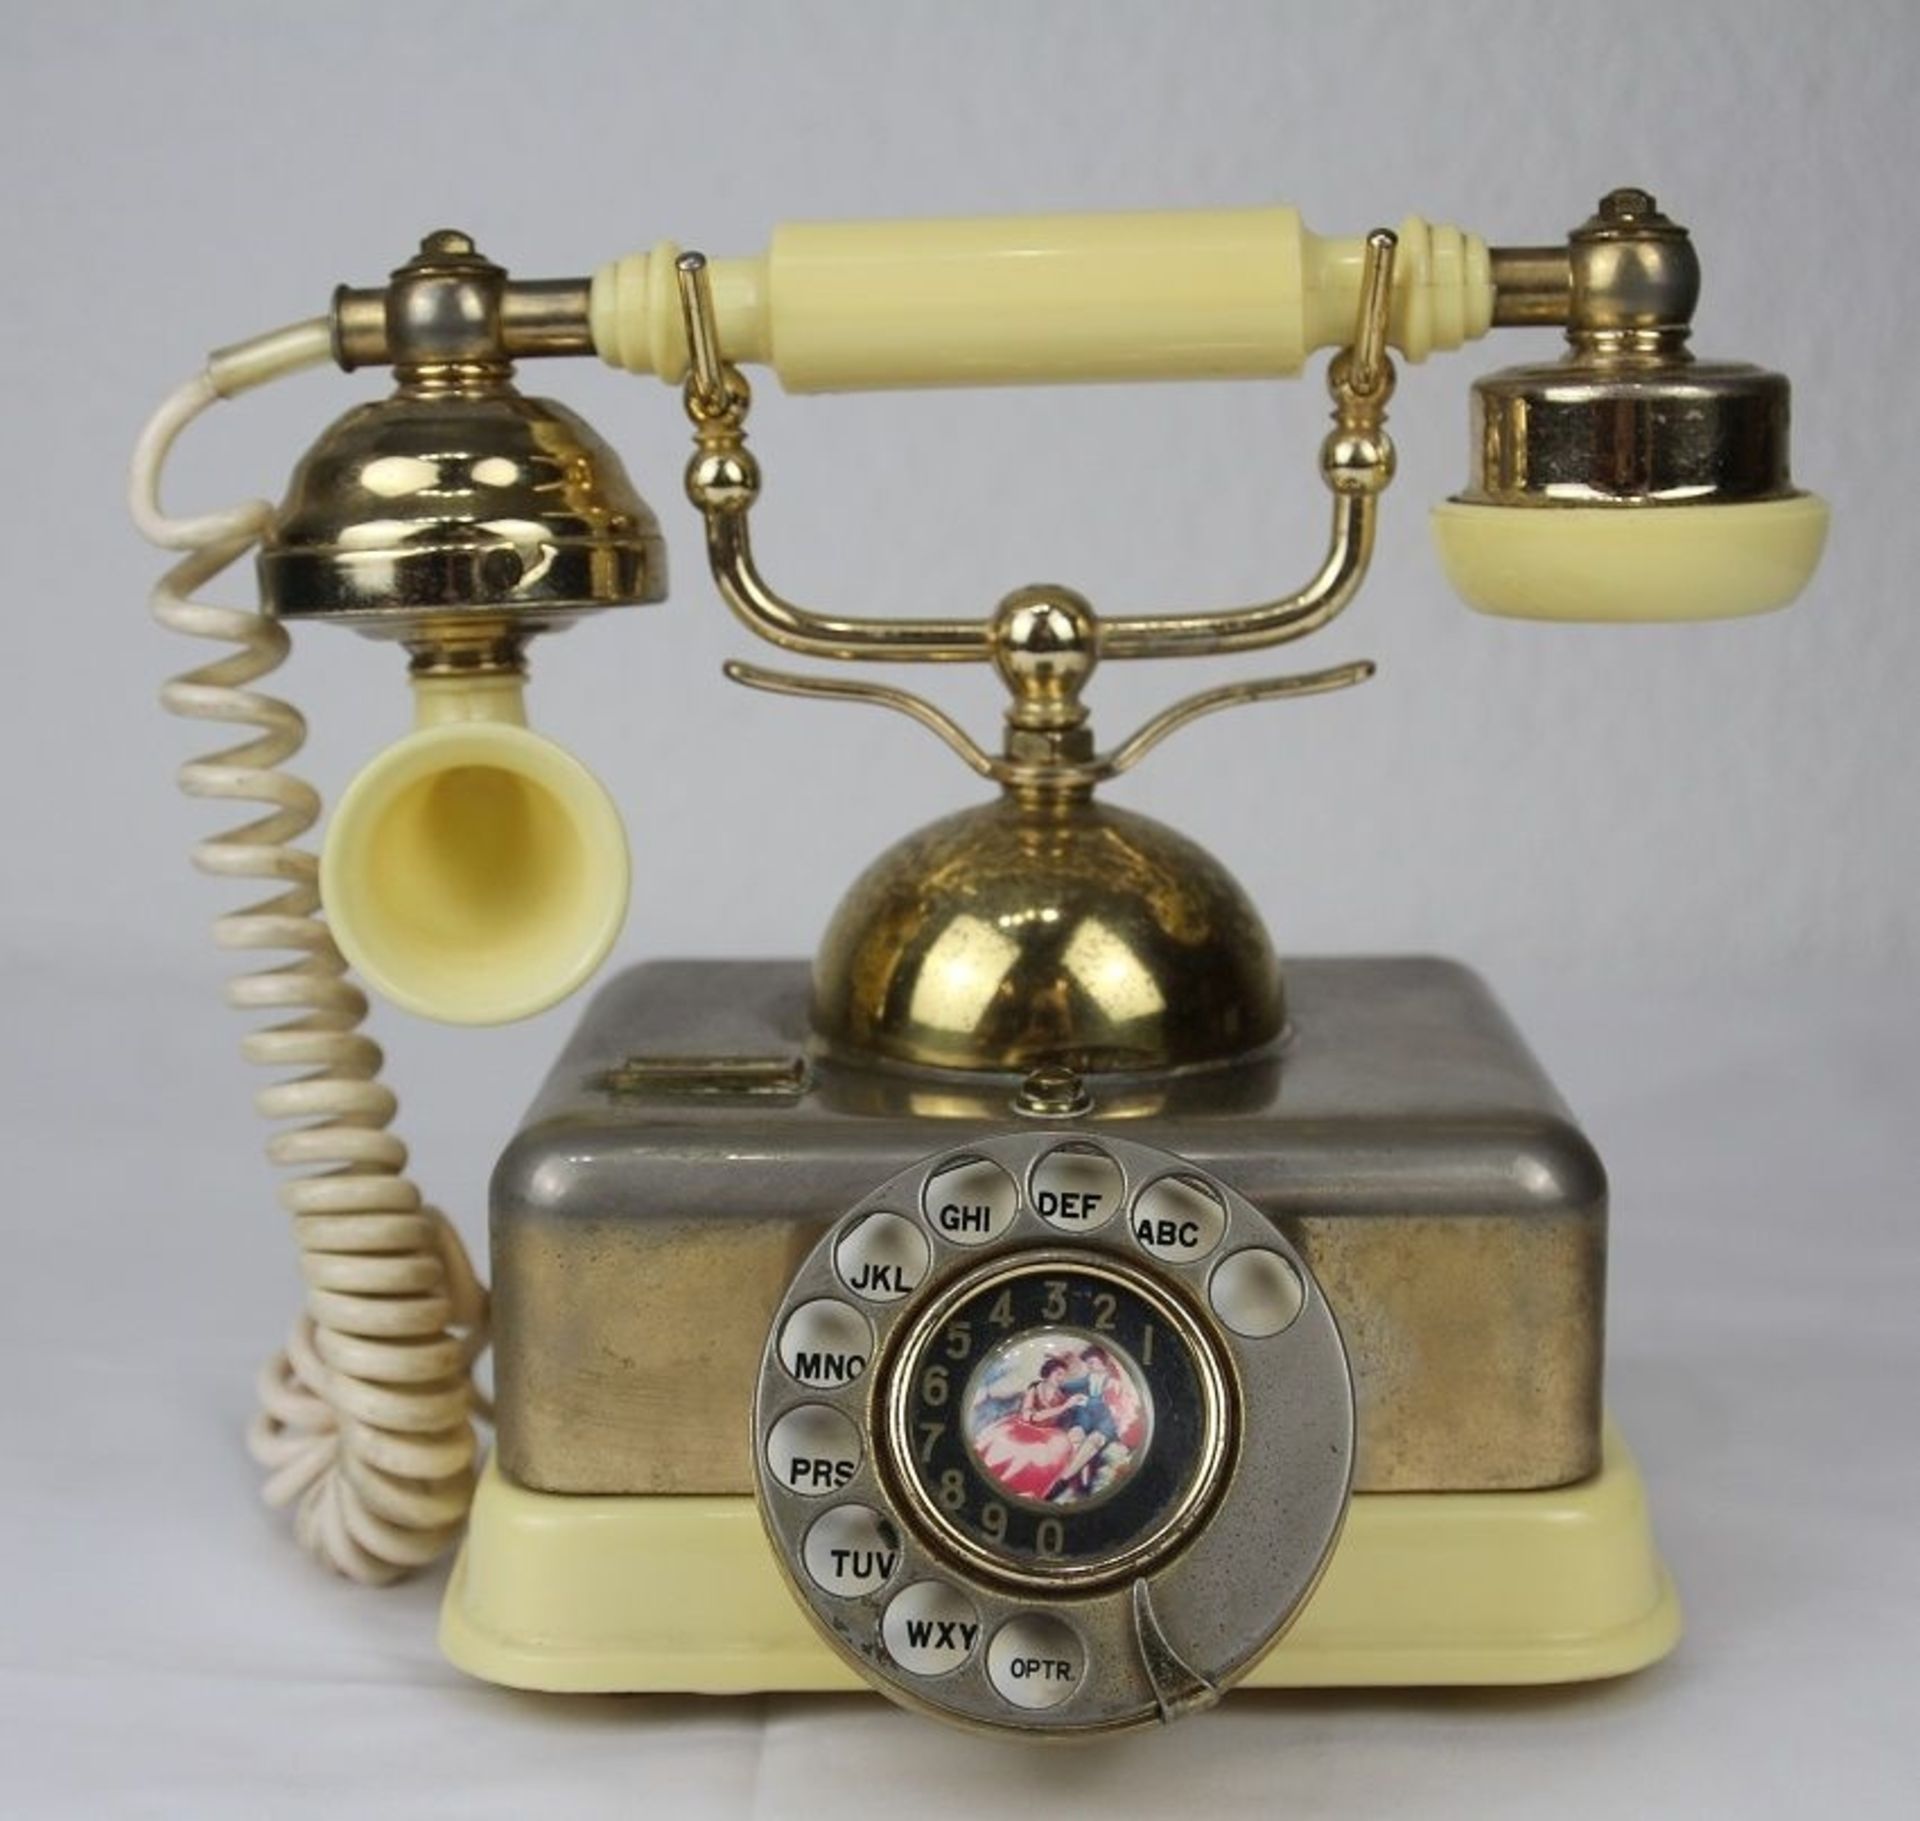 Nostalgie Telefon Deko Vintage mit Wählscheibe